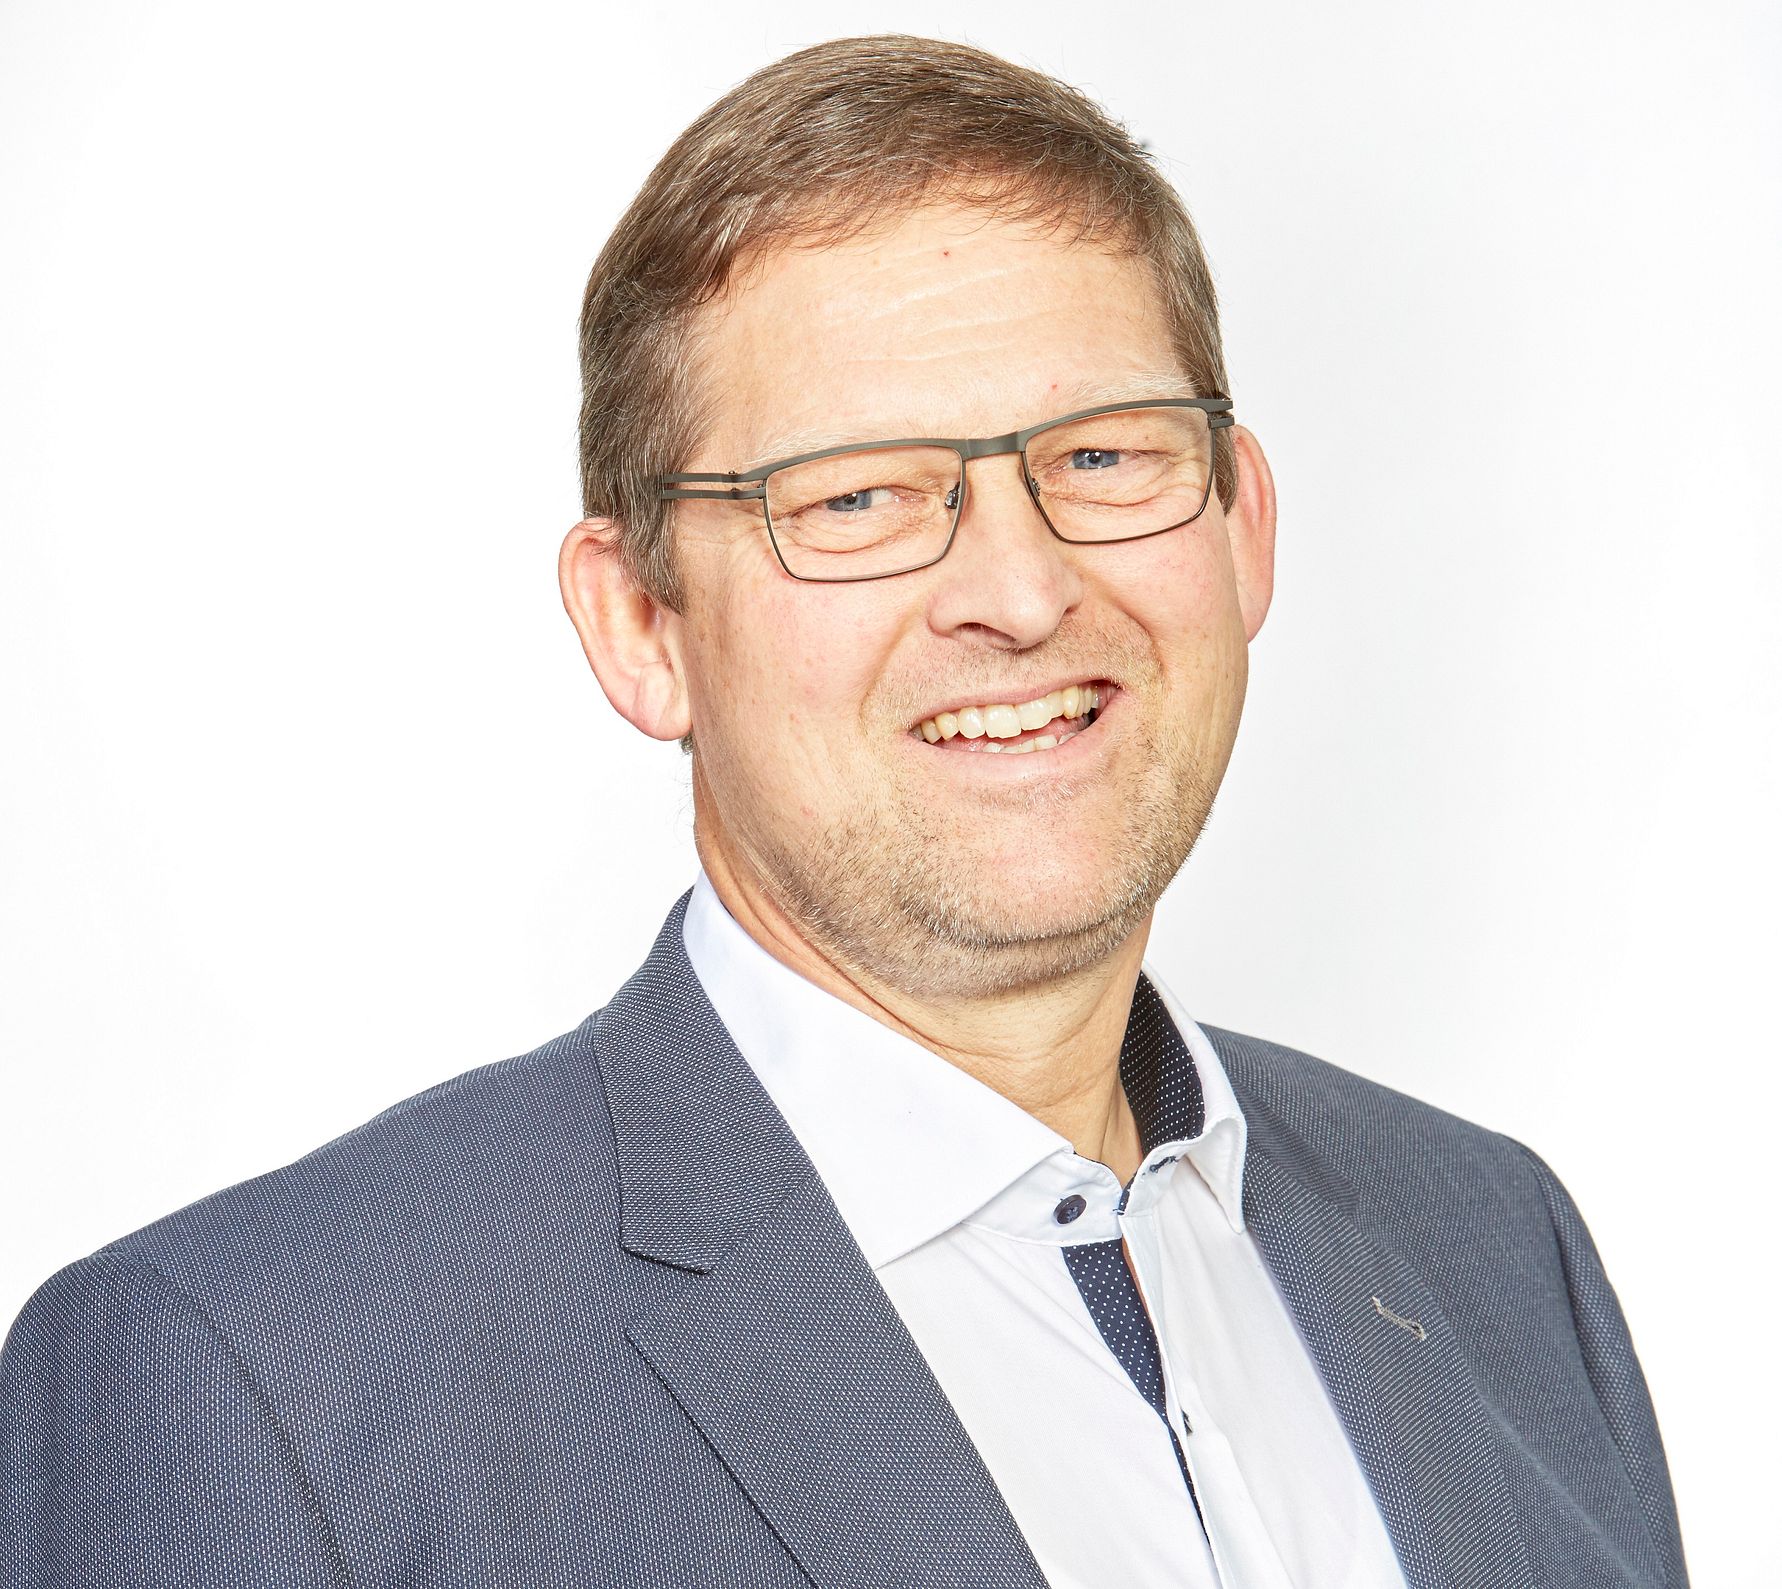 Jan Toft Nørgaard wird neuer Aufsichtsratsvorsitzender von Arla Foods